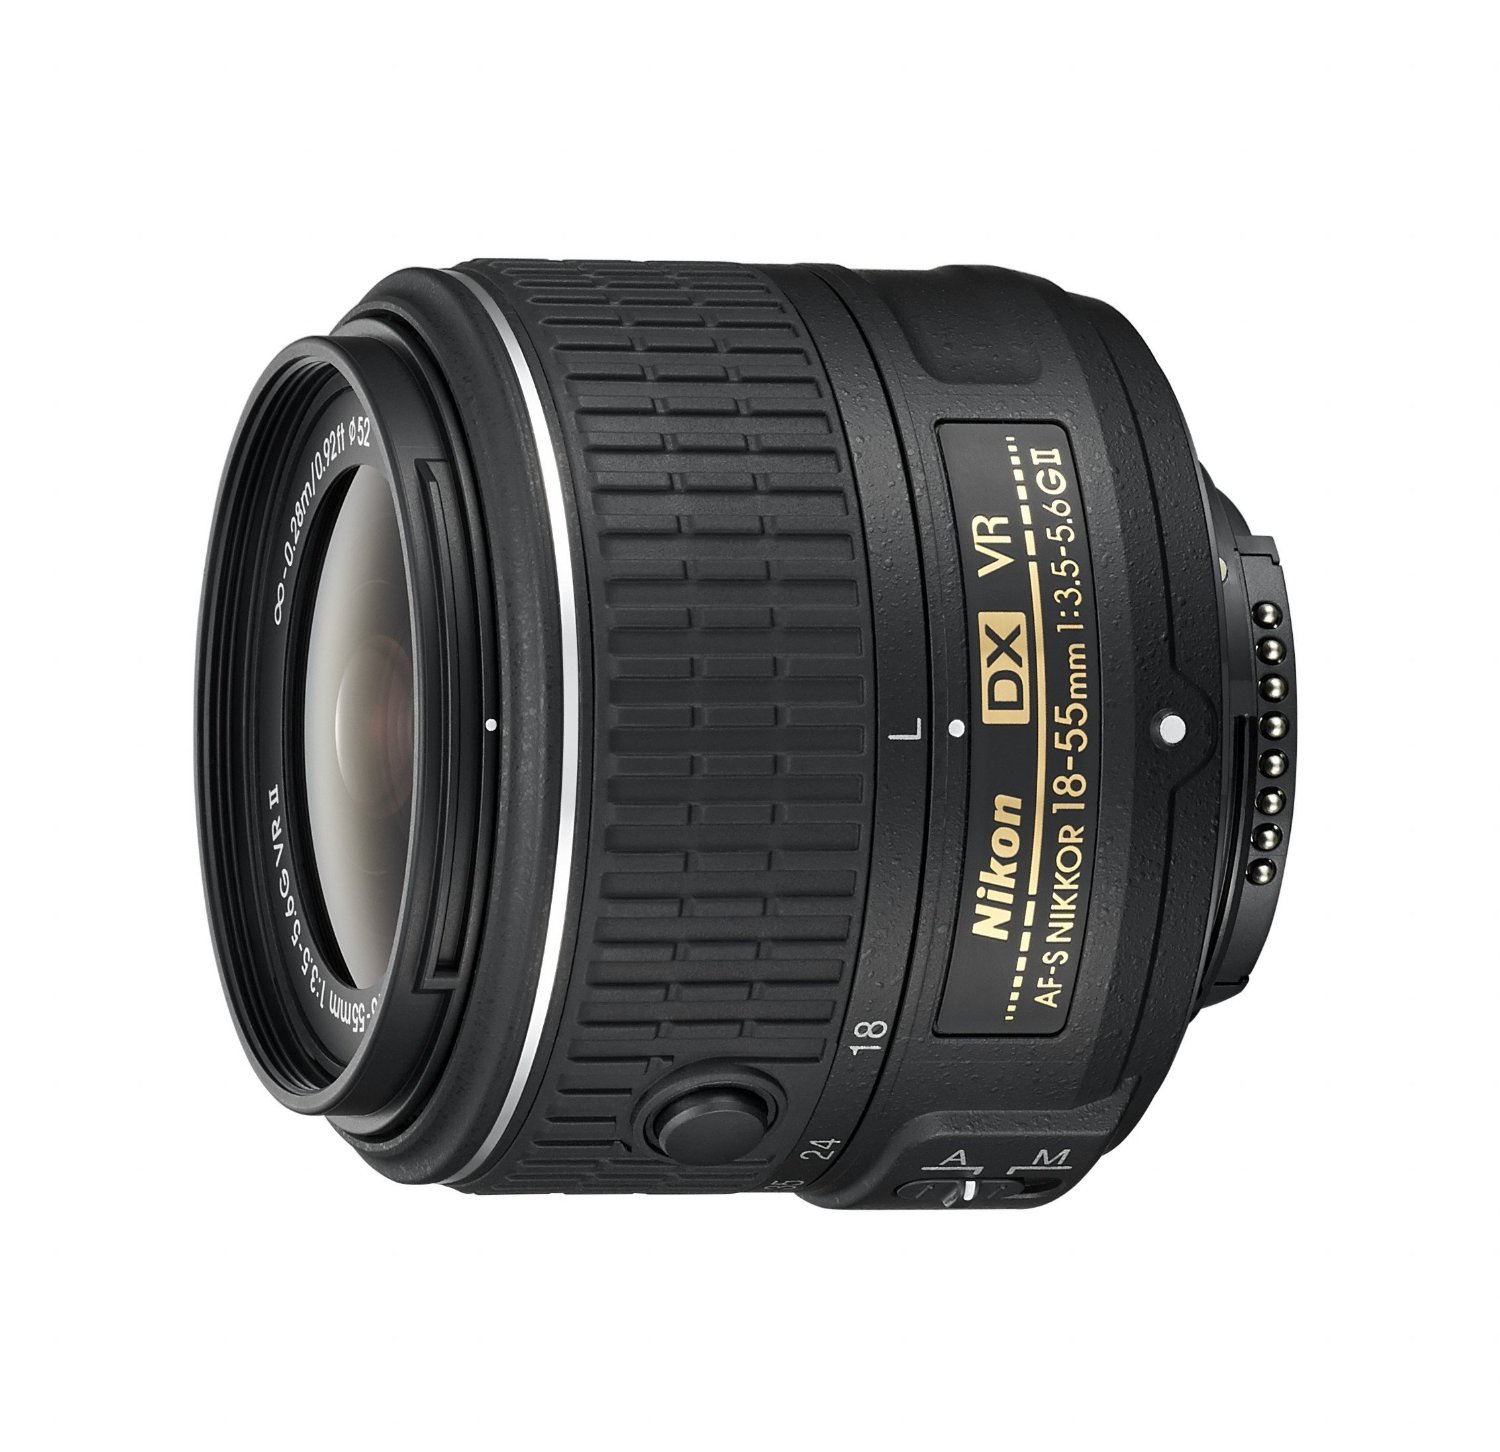 Nikon AF-S DX NIKKOR 18-55mm f/3.5-5.6G Vibration Reduction II Zoom Lens with Auto Focus for DSLR Cameras